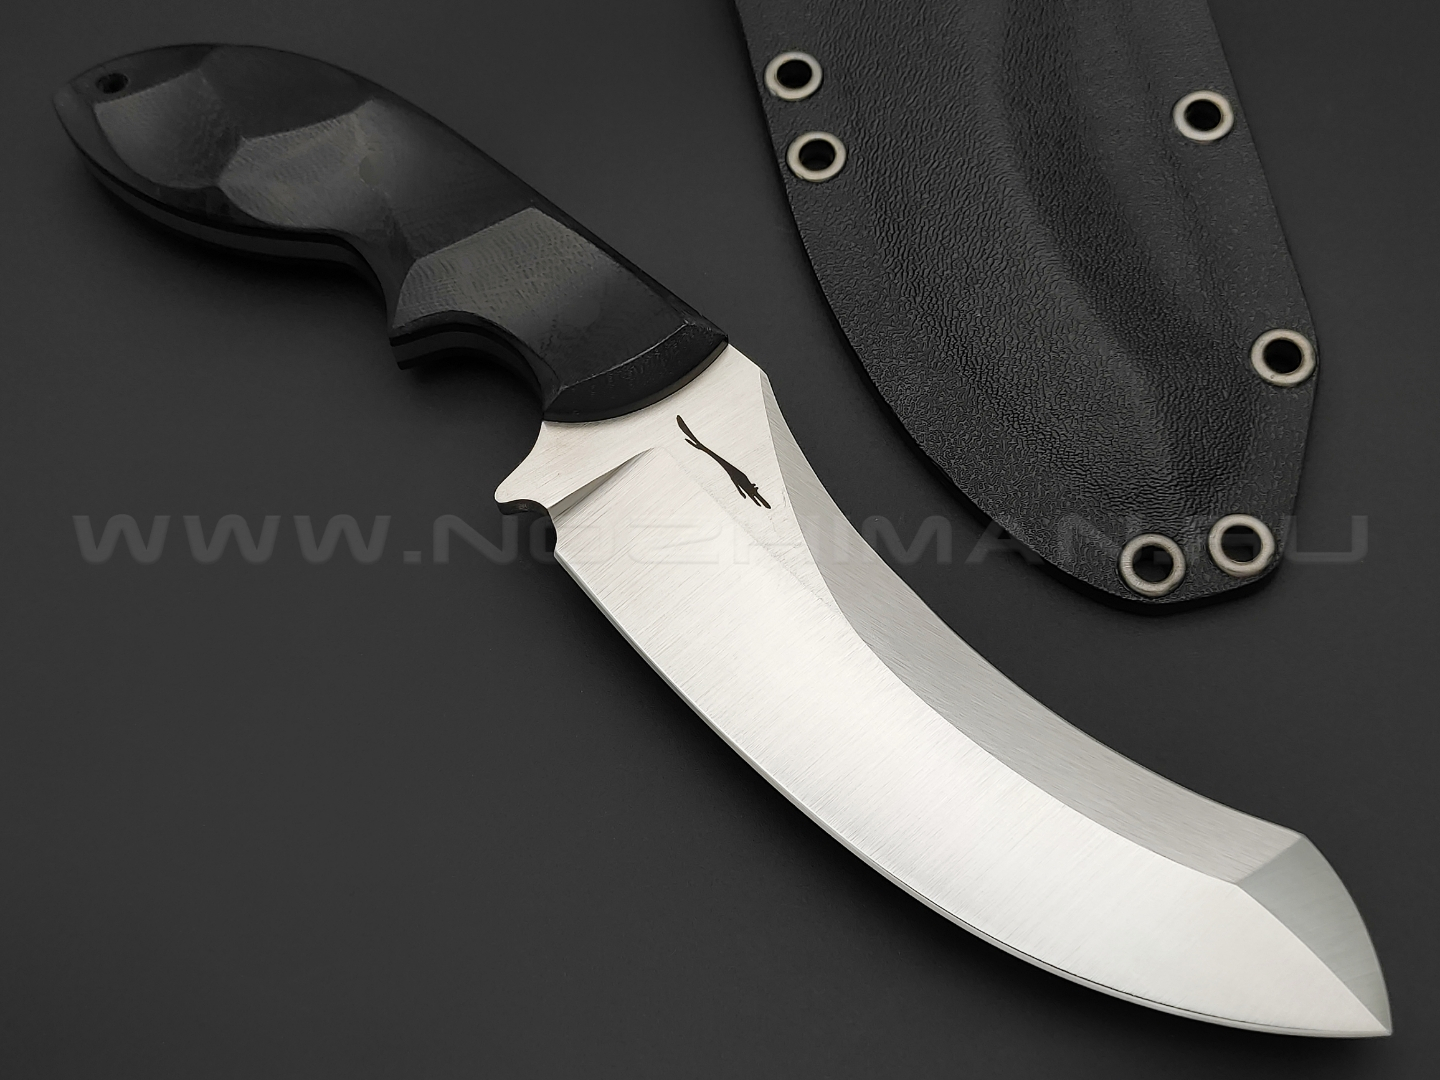 Волчий Век нож Кондрат 12 сталь 95х18 WA satin, рукоять G10 black